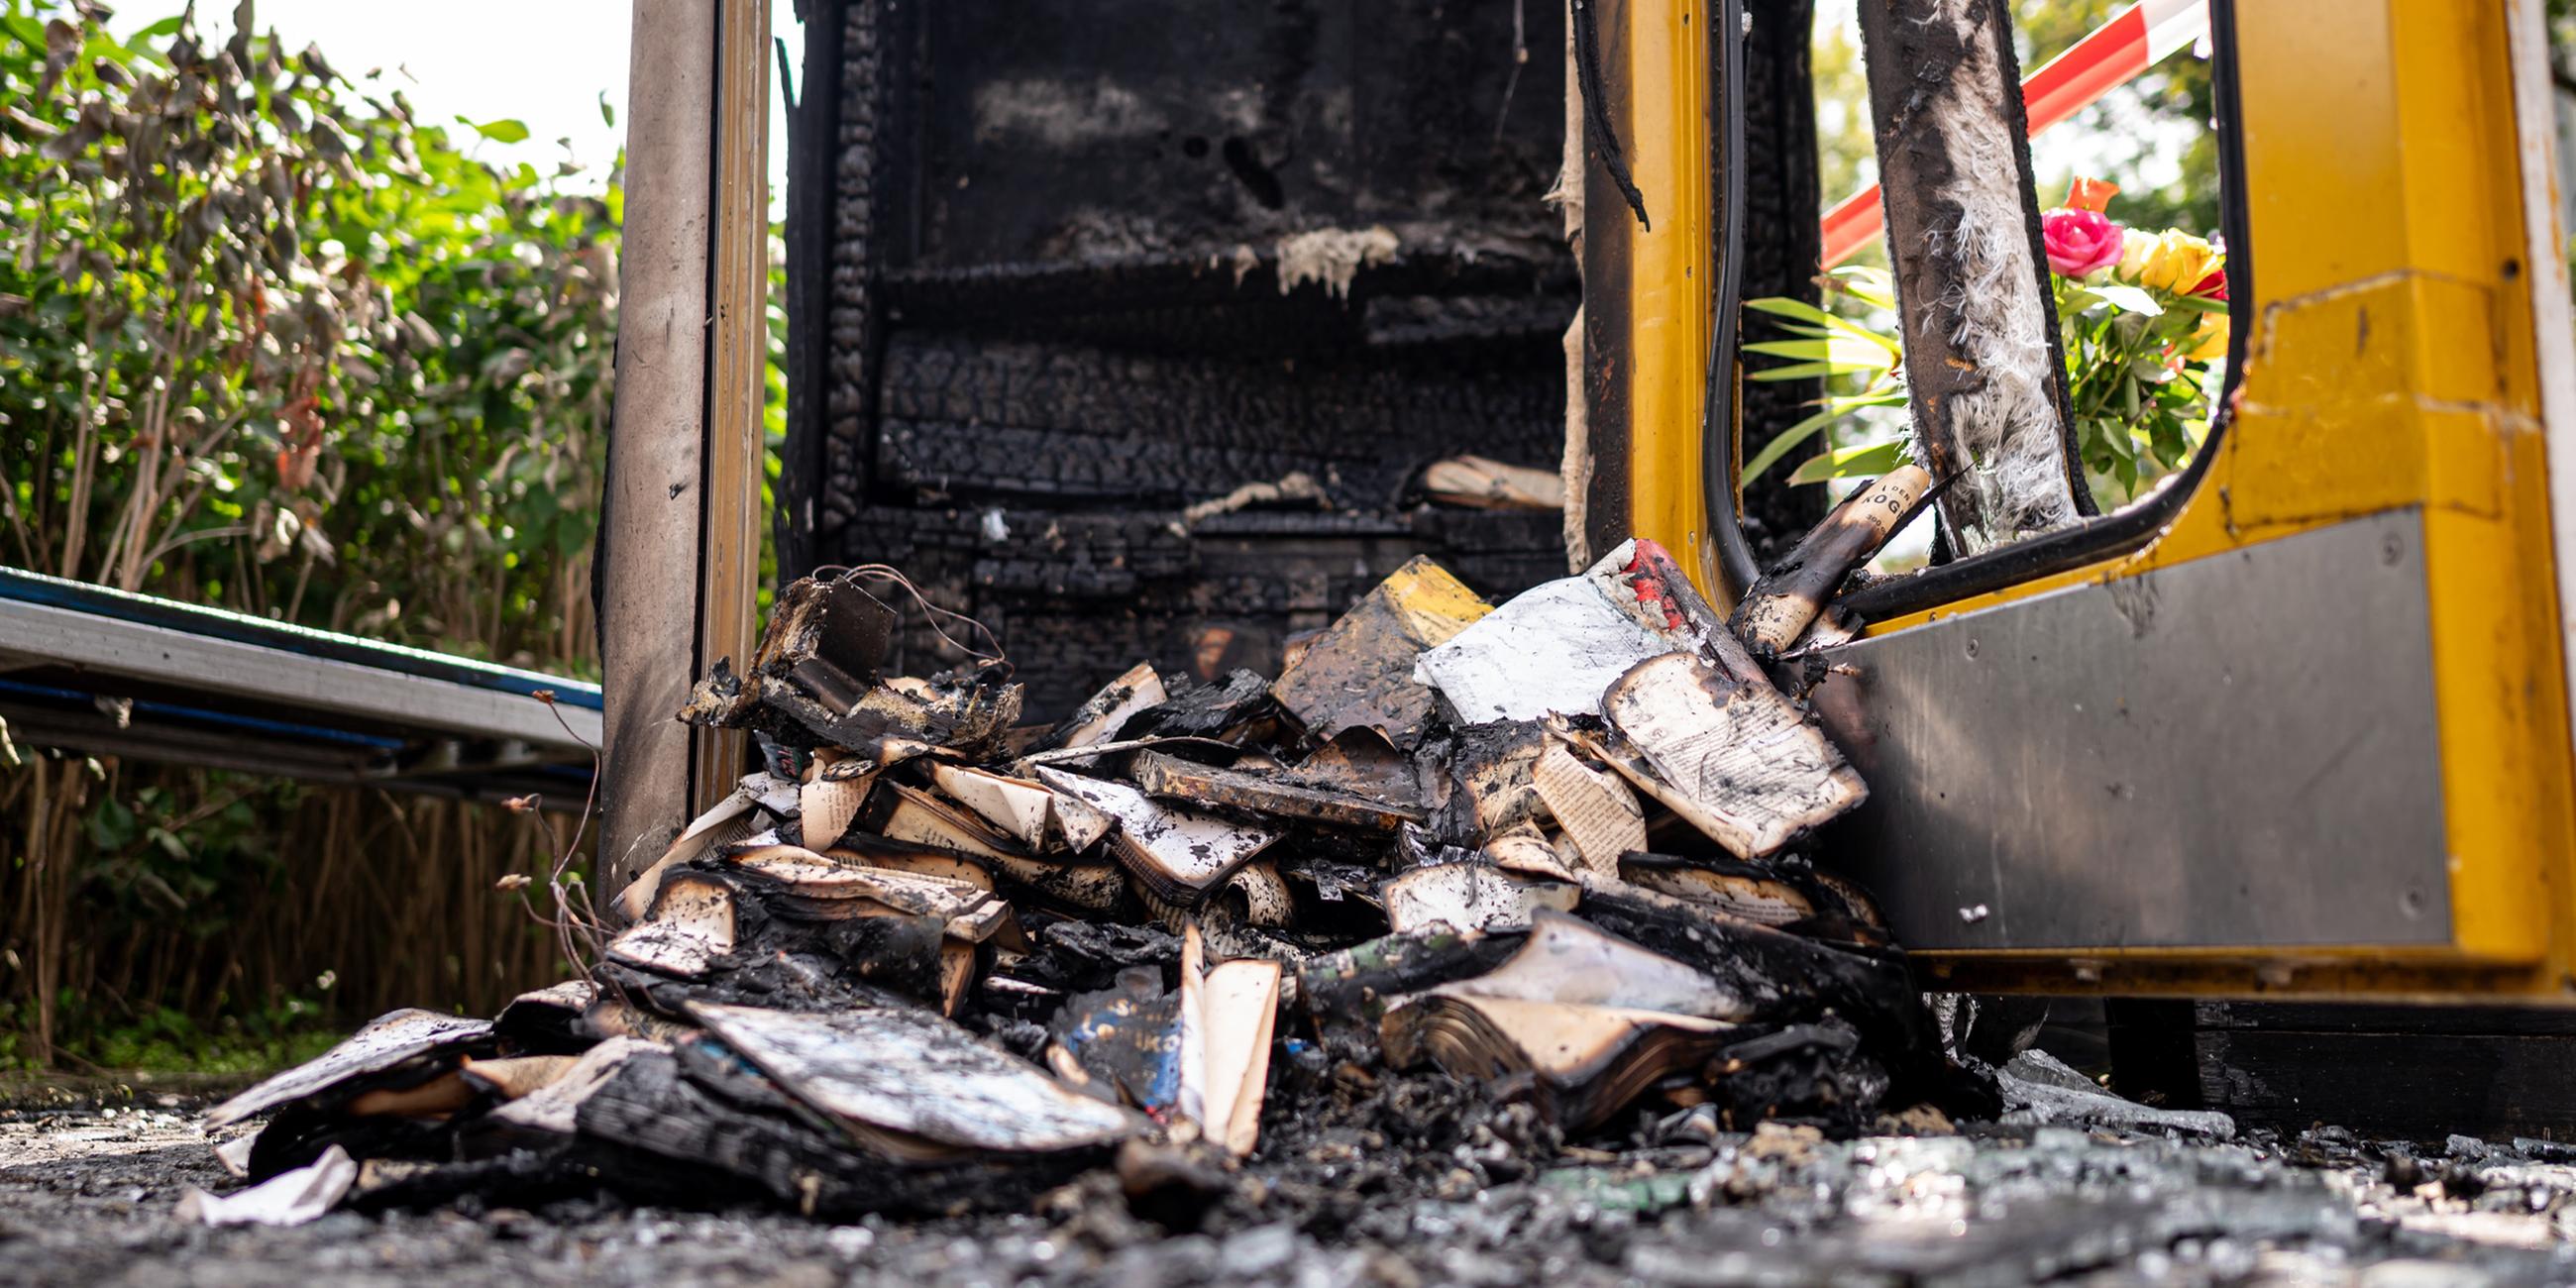 Verbrannte Bücher liegen in der ausgebrannten Bücherbox in der Nähe des Mahnmals "Gleis 17".